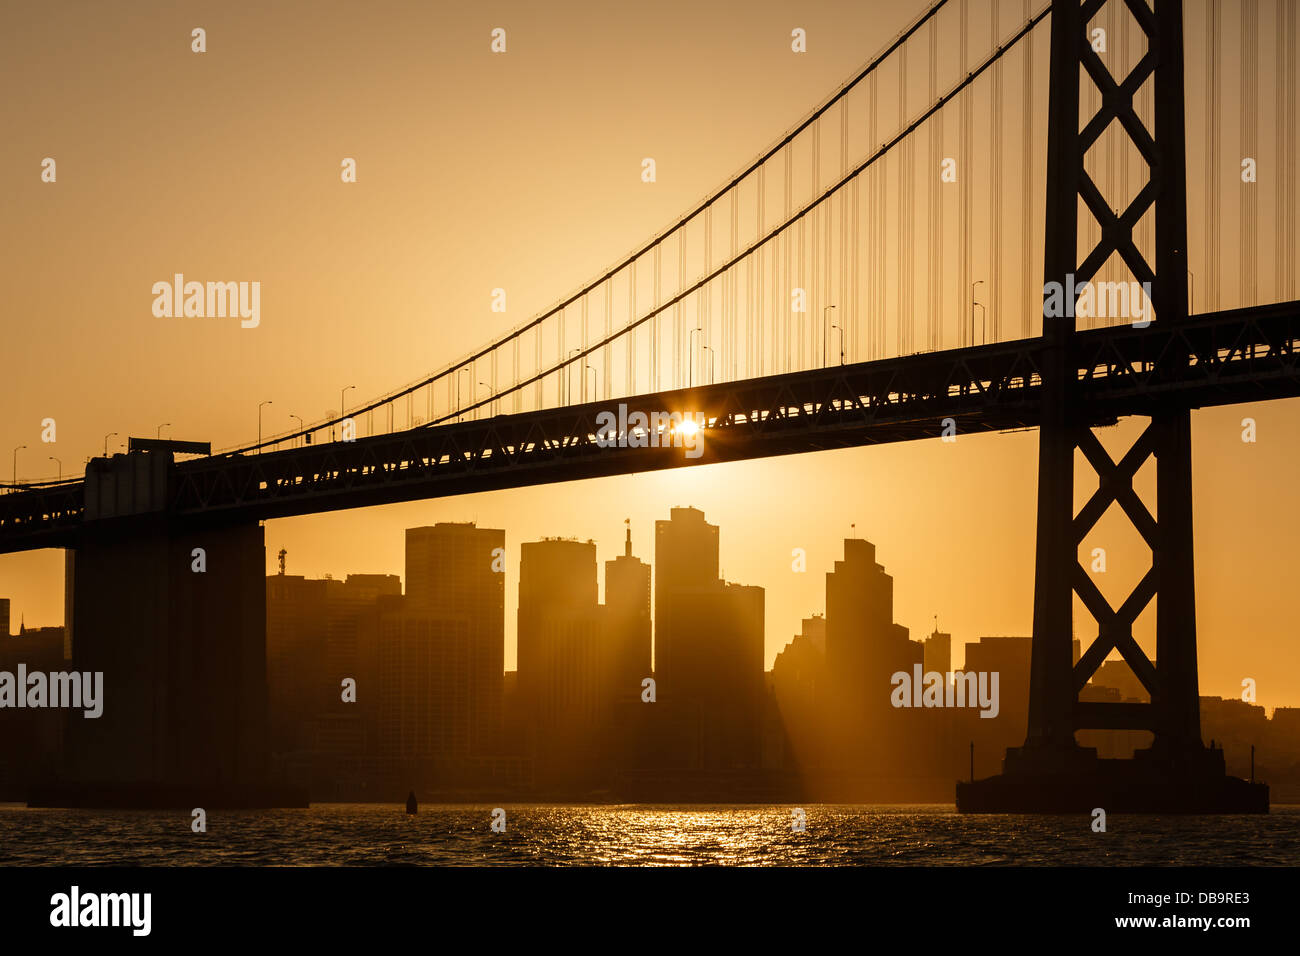 La luce del sole dorata illumina il ponte della baia e i grattacieli del lungomare di San Francisco Foto Stock